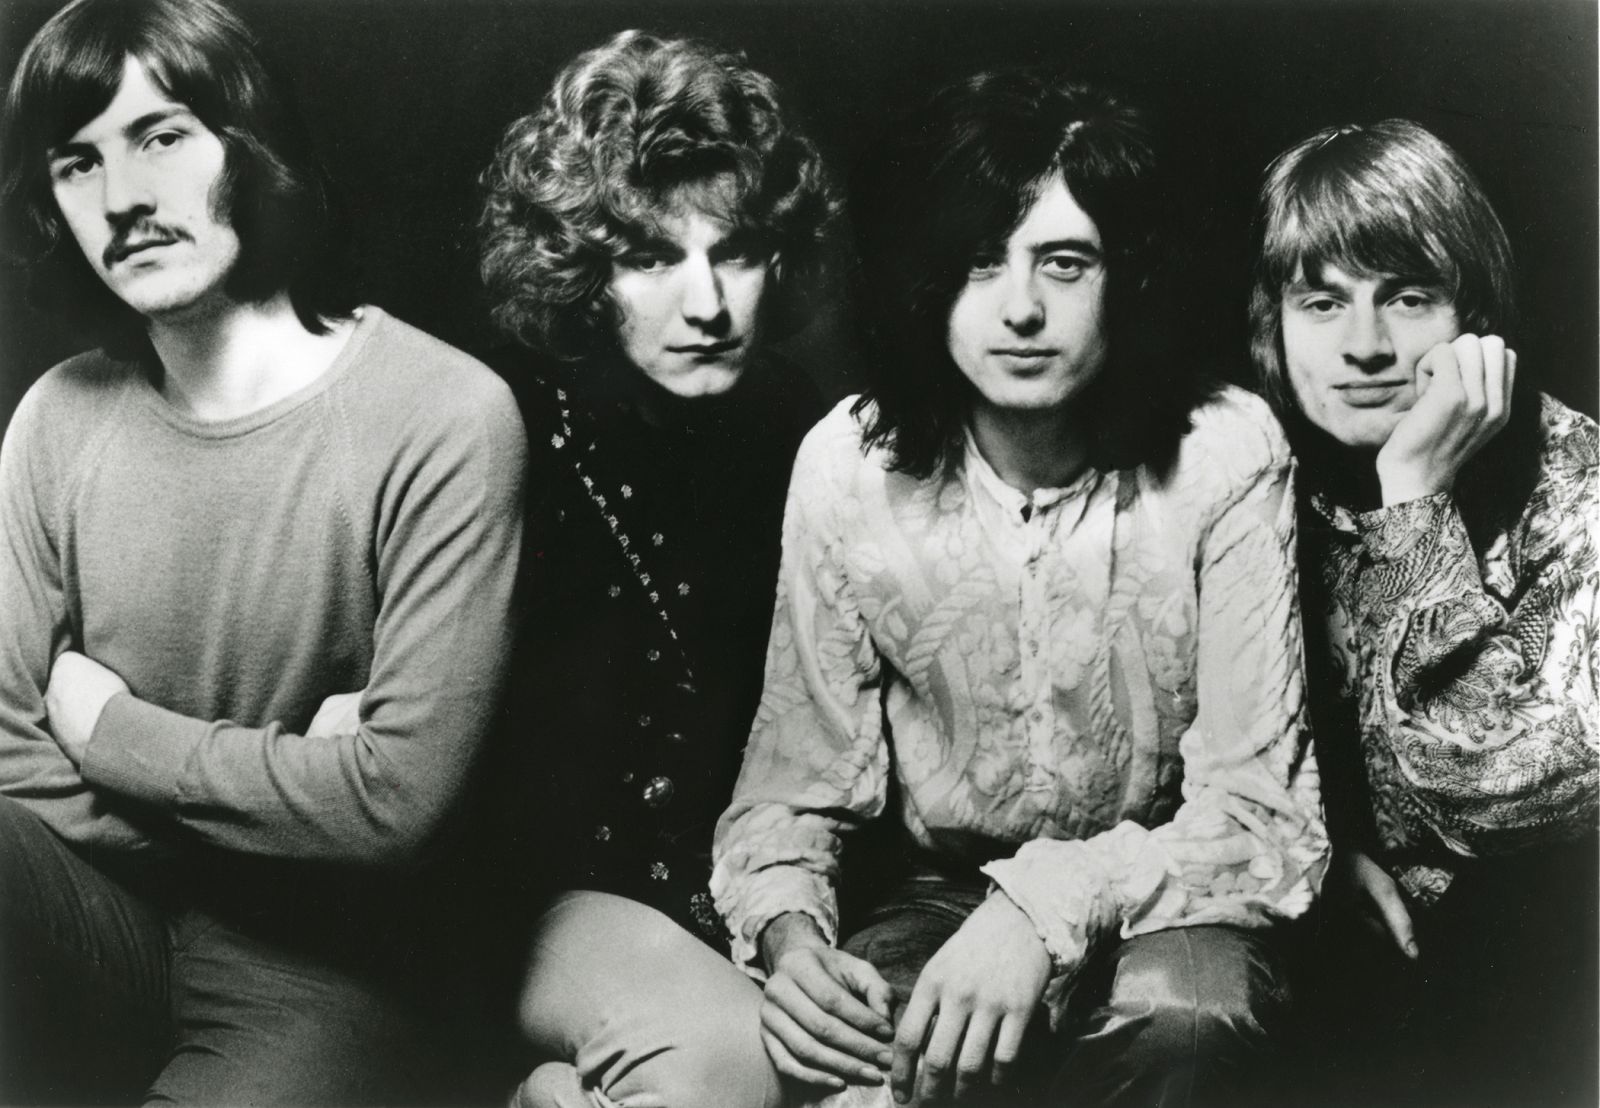 La revista Rolling Stone considera a Led Zeppelin una de las bandas más importantes de la Historia